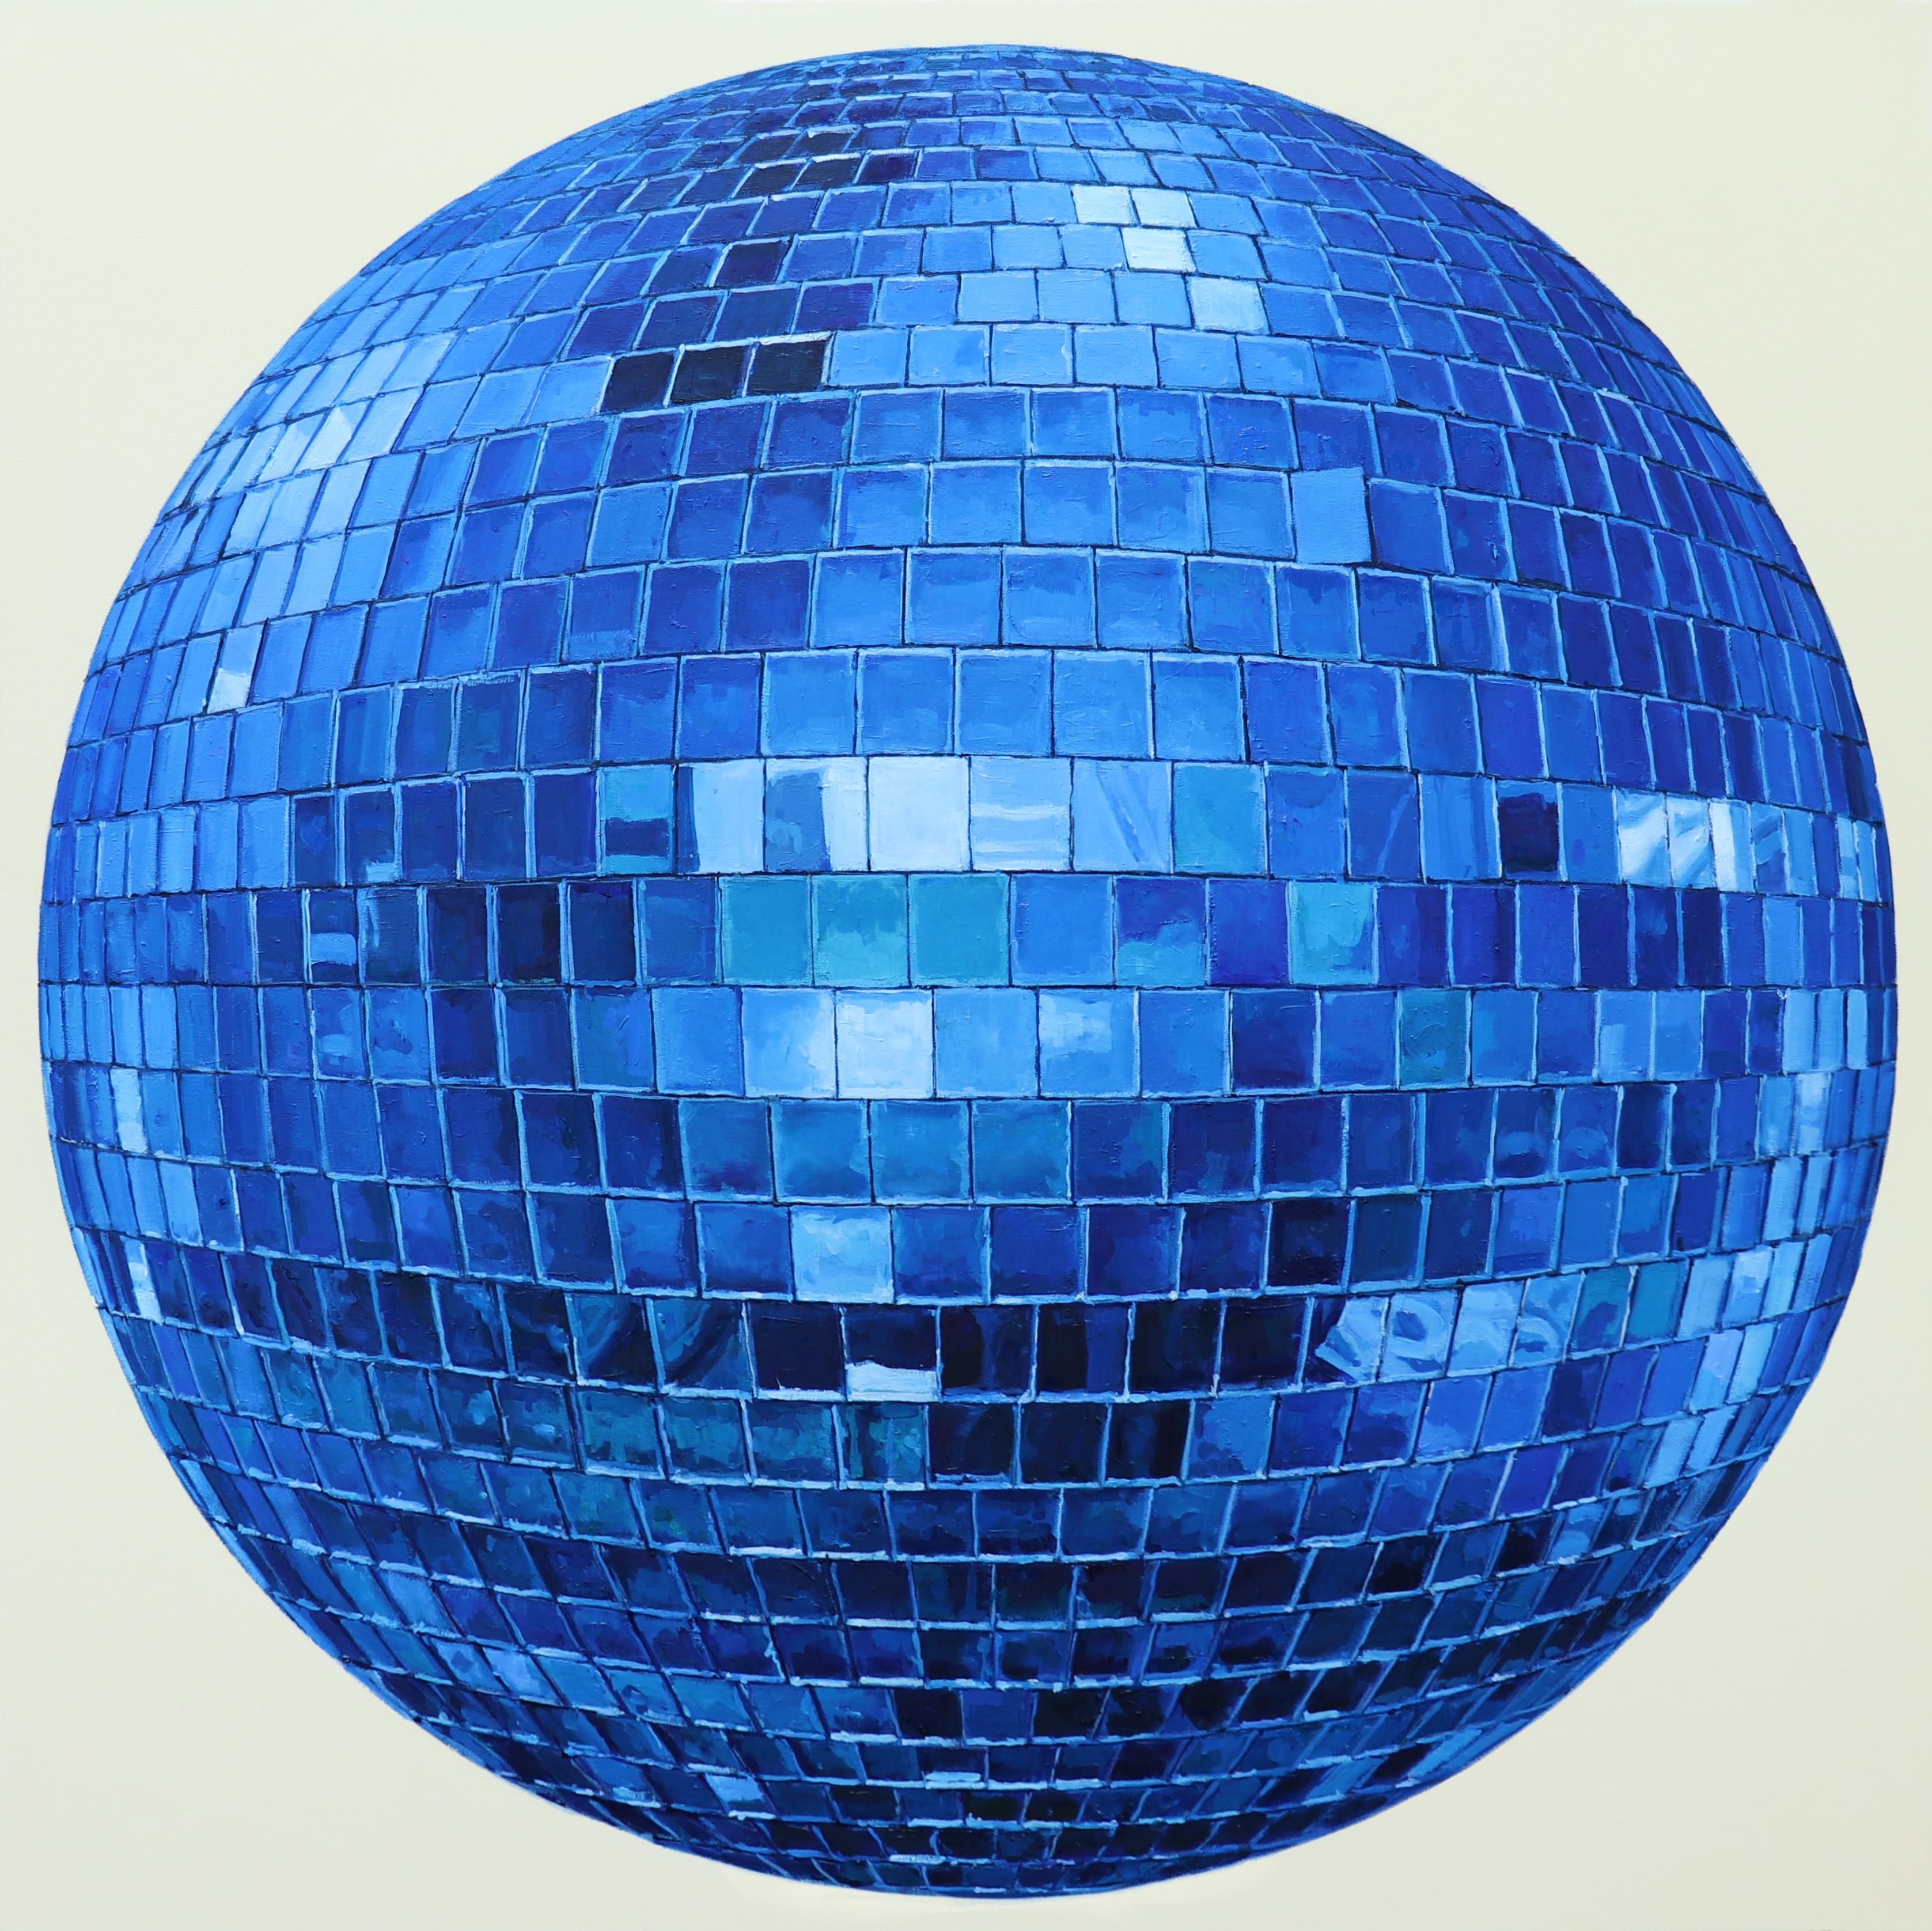 DISCO BALL - Peinture photoréaliste / Image en miroir / Reflections / Cobalt - Painting de Richard Combes